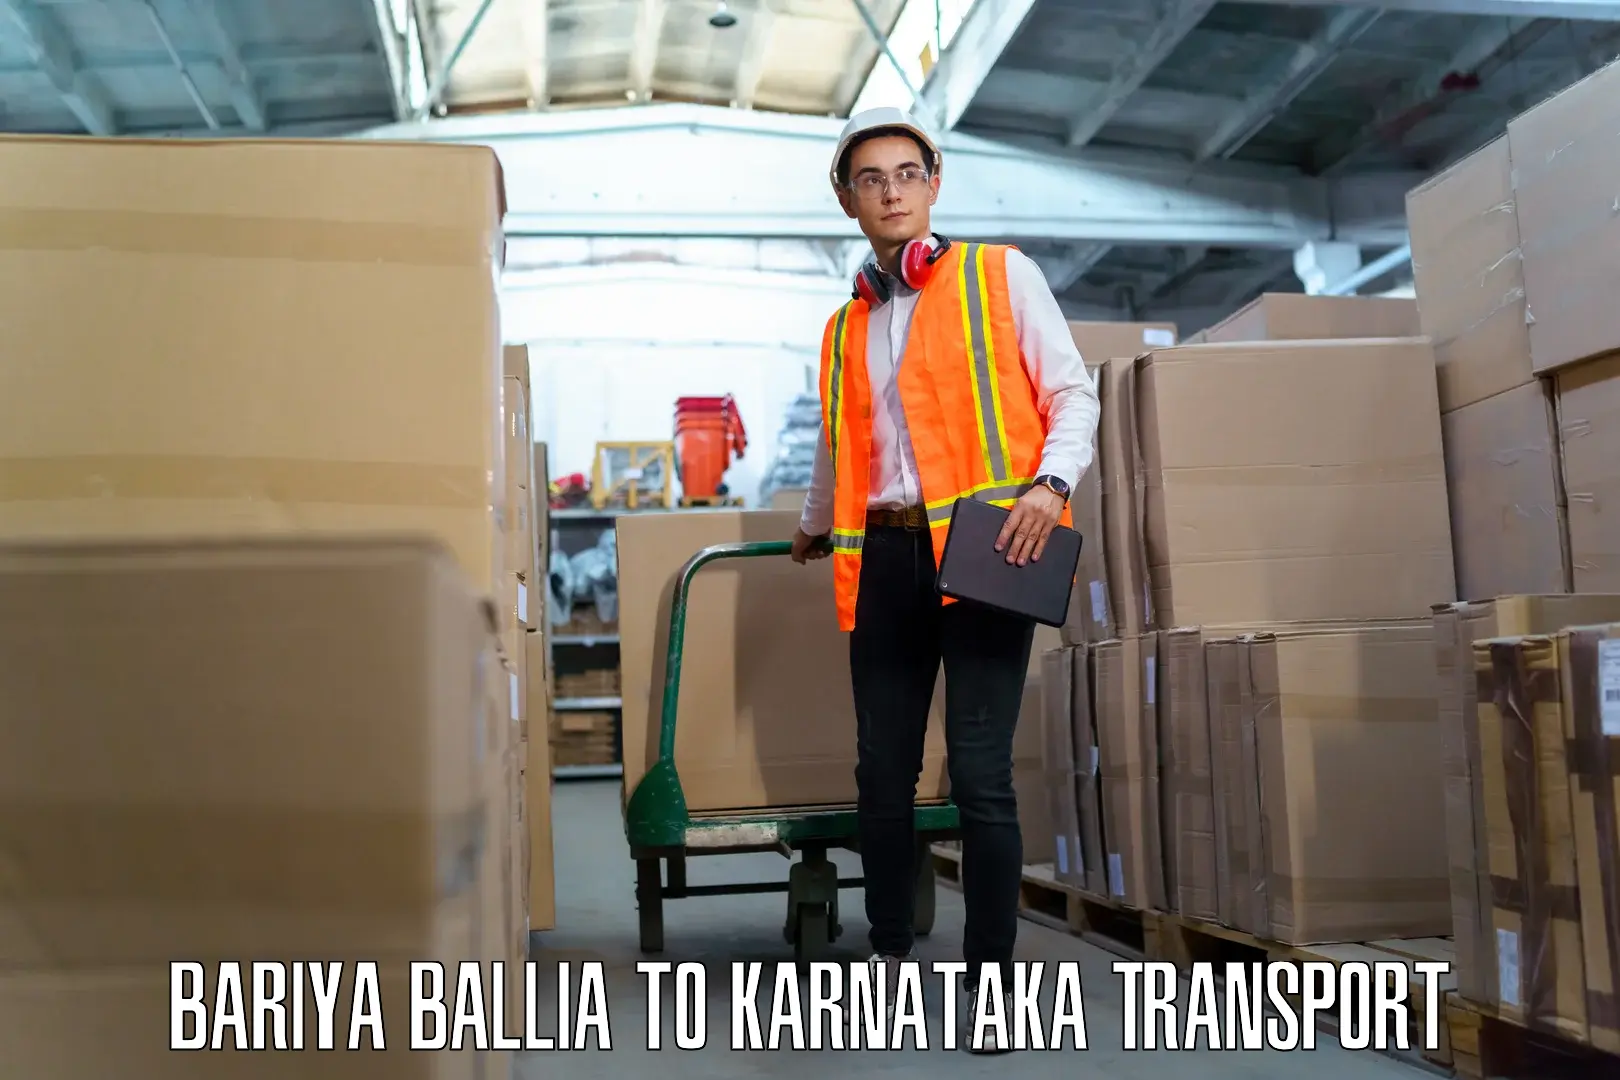 Furniture transport service Bariya Ballia to Gokak